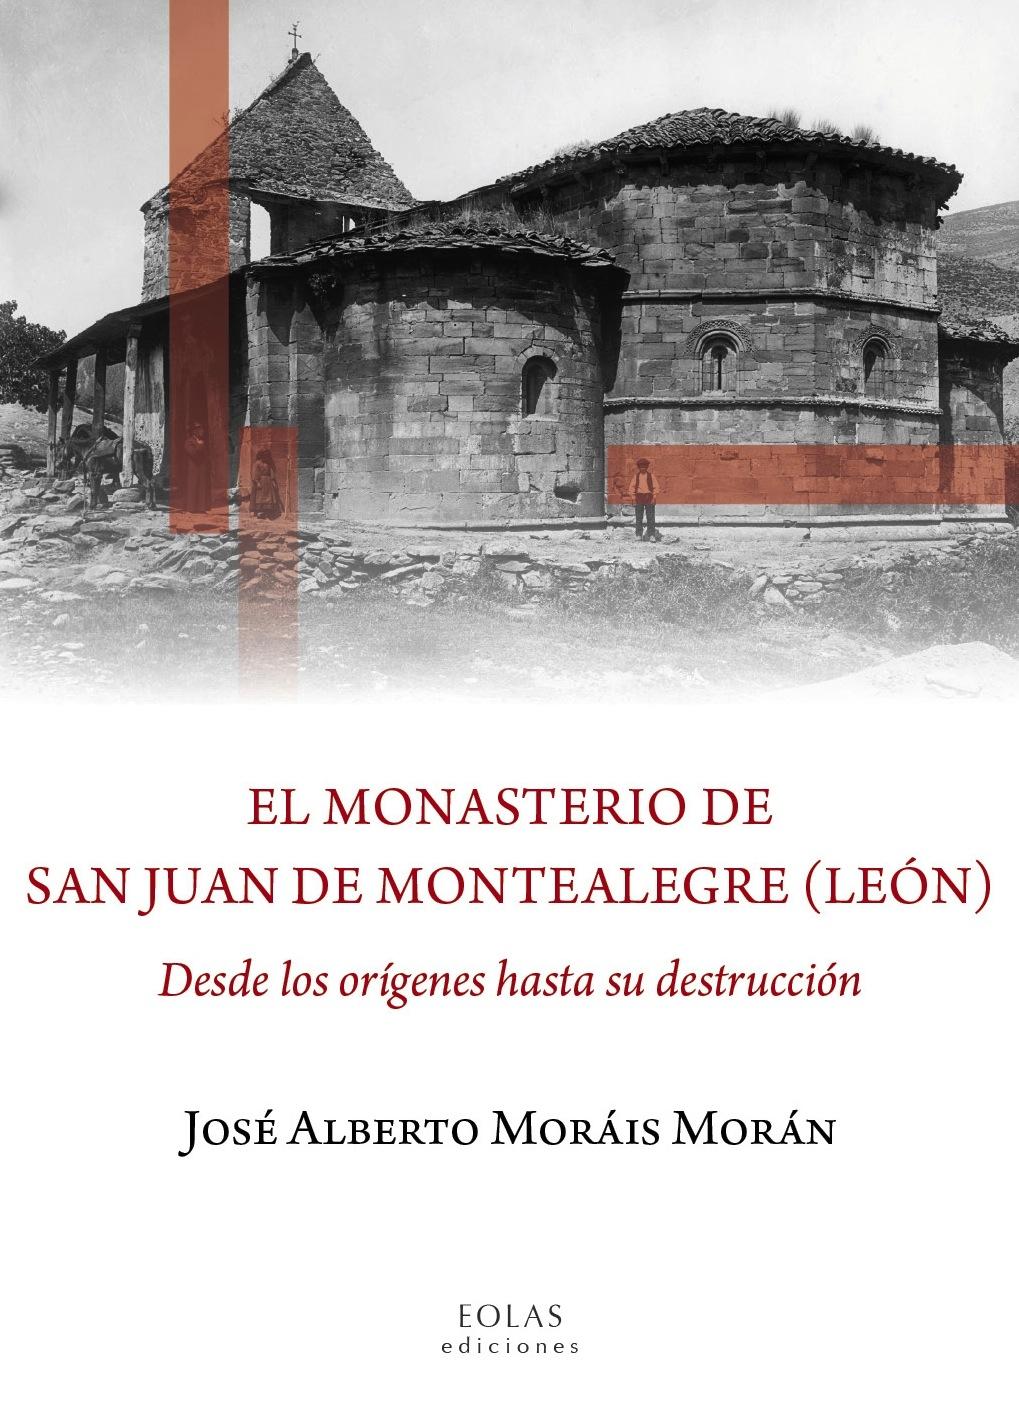 EL MONASTERIO DE SAN JUAN DE MONTEALEGRE (LEÓN) "DESDE LOS ORIGENES HASTA SU DESTRUCCIÓN"